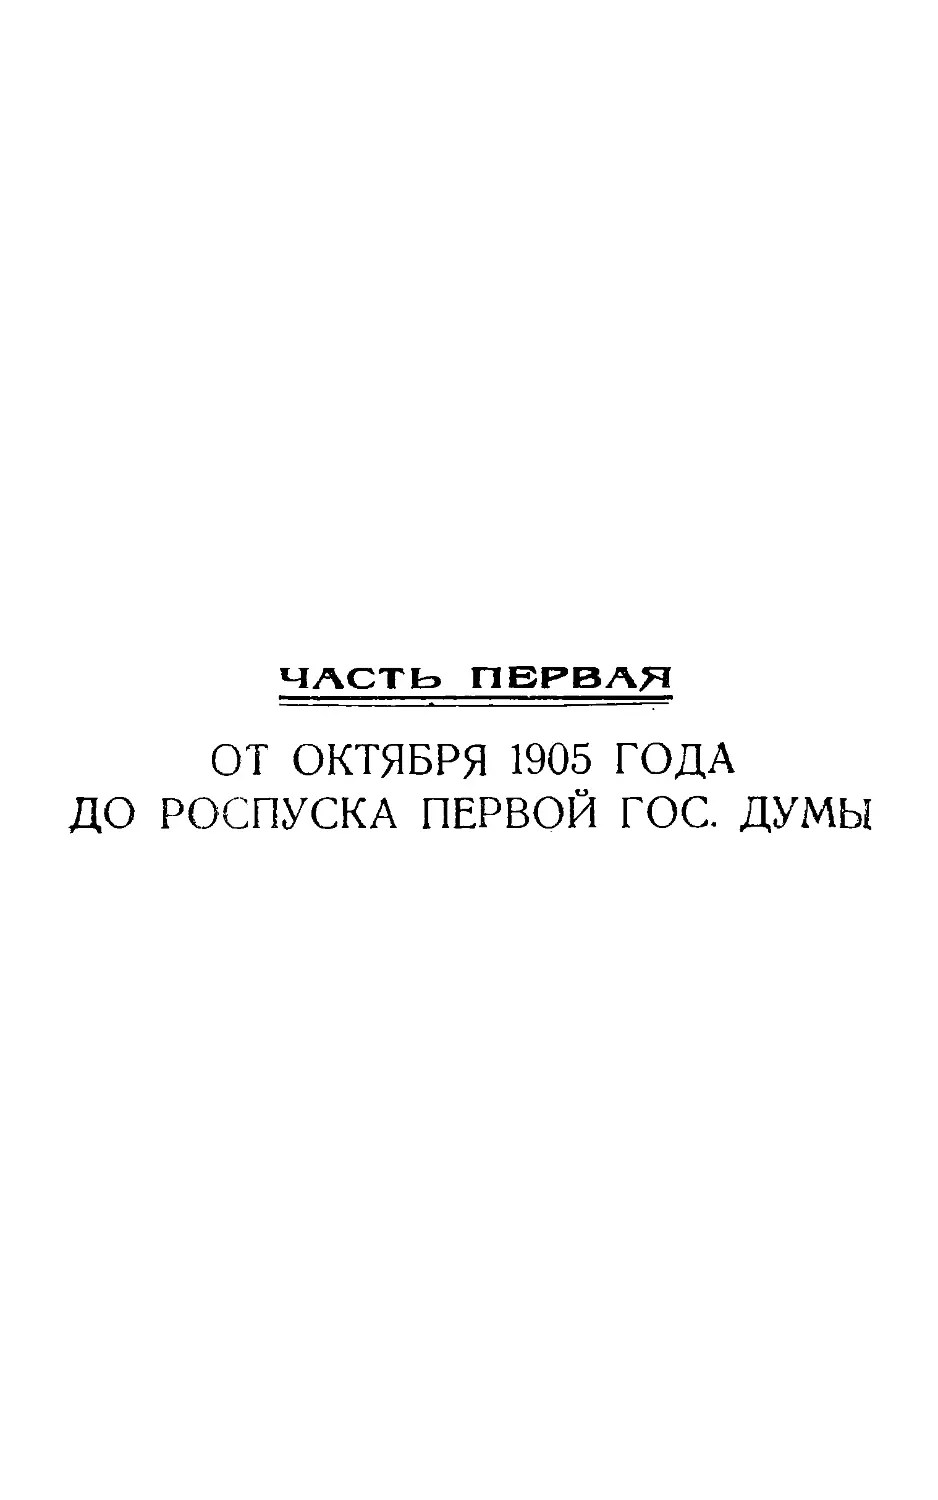 Часть I. От октября 1905 г. до роспуска Первой Гос. Думы.